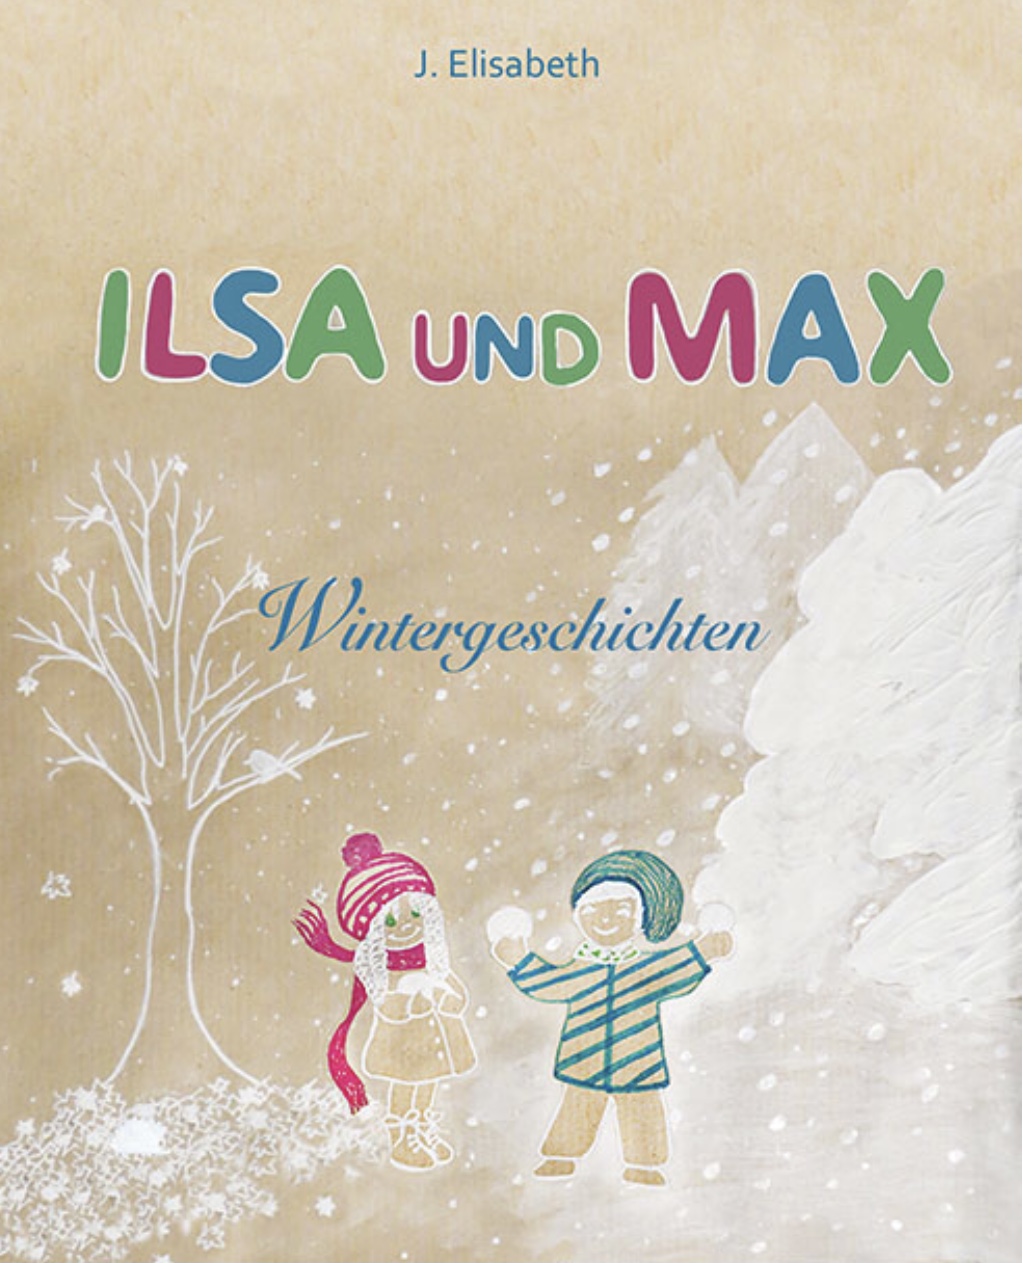 In dem Kinderbuch "Ilsa und Max - Wintergeschichten" von J. Elisabeth können die kleinen Leser Wildtiere hautnah erleben.